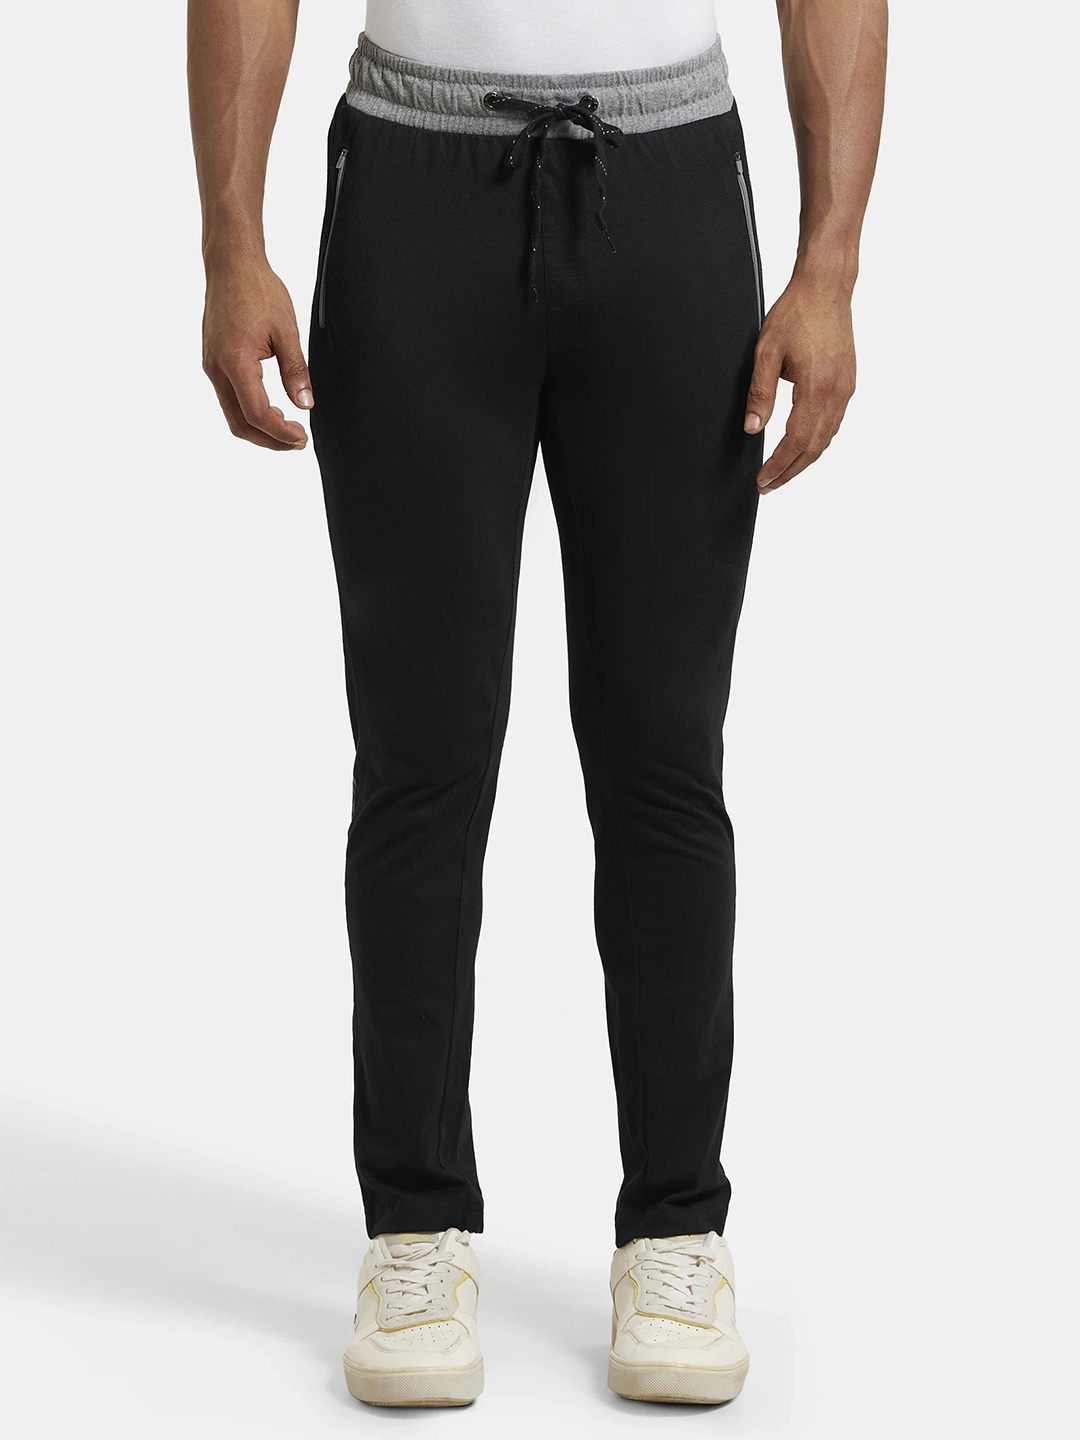 Jockey Men's Cotton Track Pants Loungewear, Leisurewear Sportswear Relaxed  Fit 